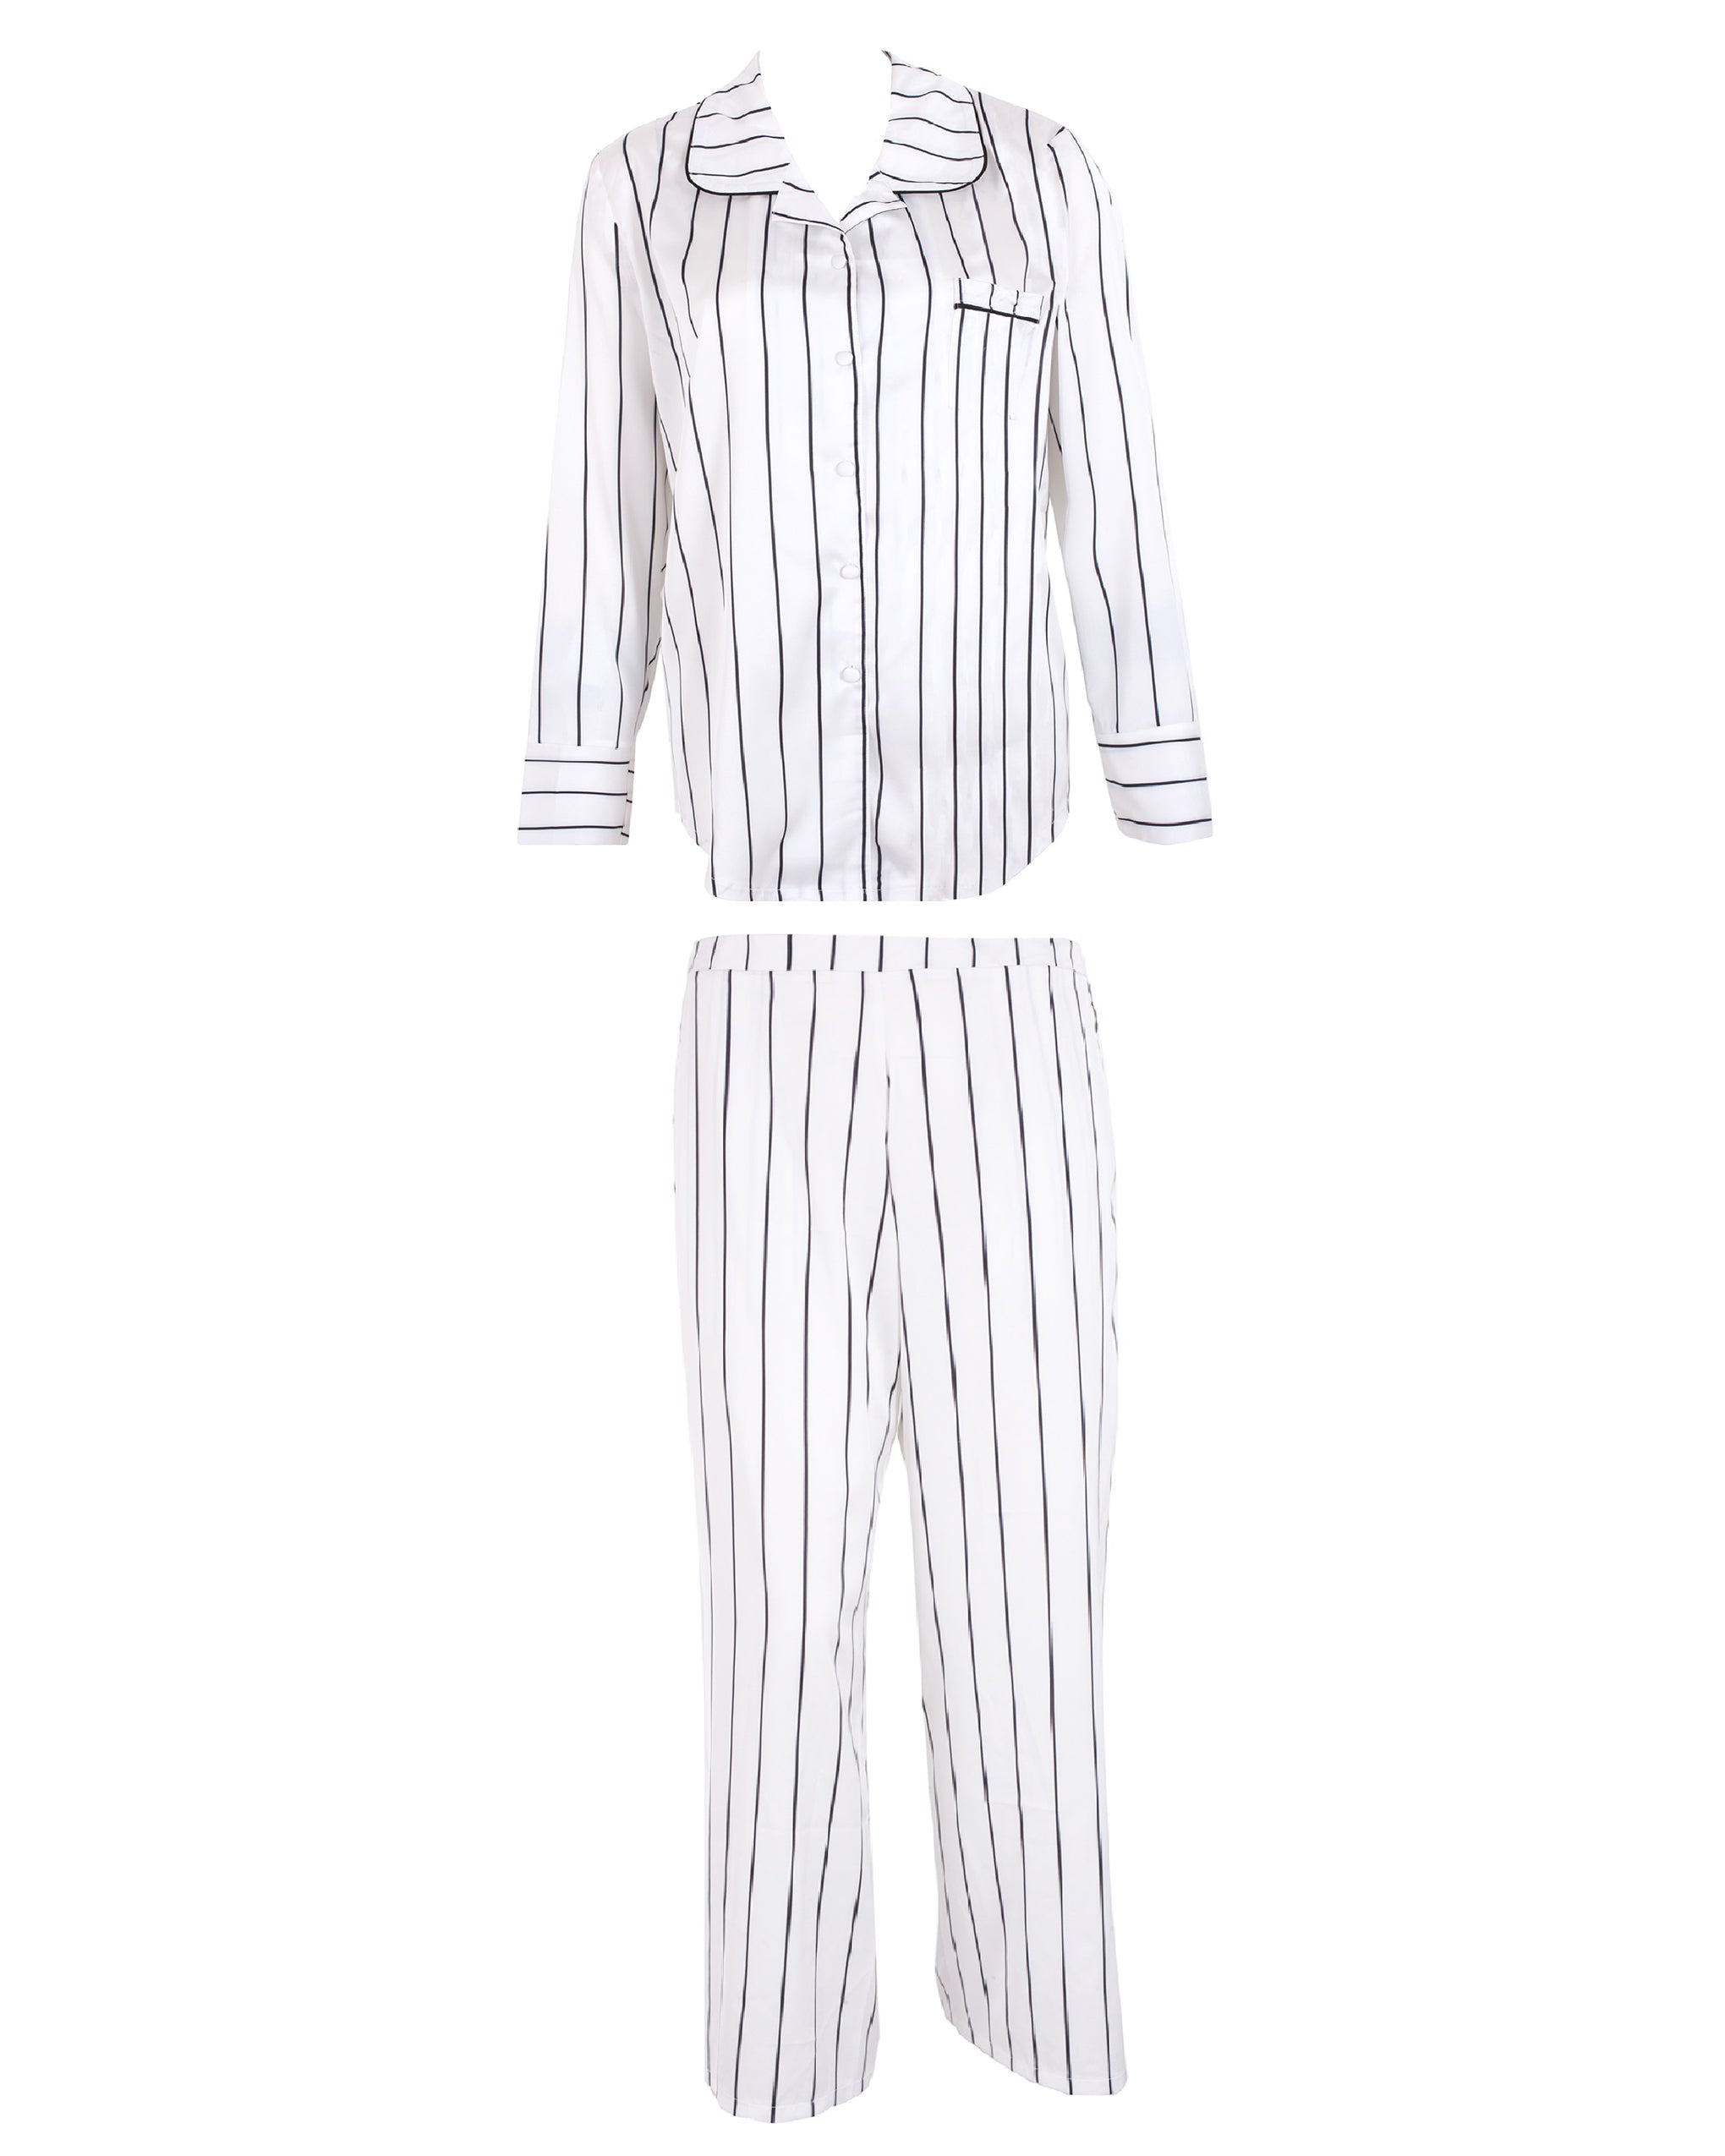 Bluebella Beau Luxury Satin Long Pyjama Set White/Black